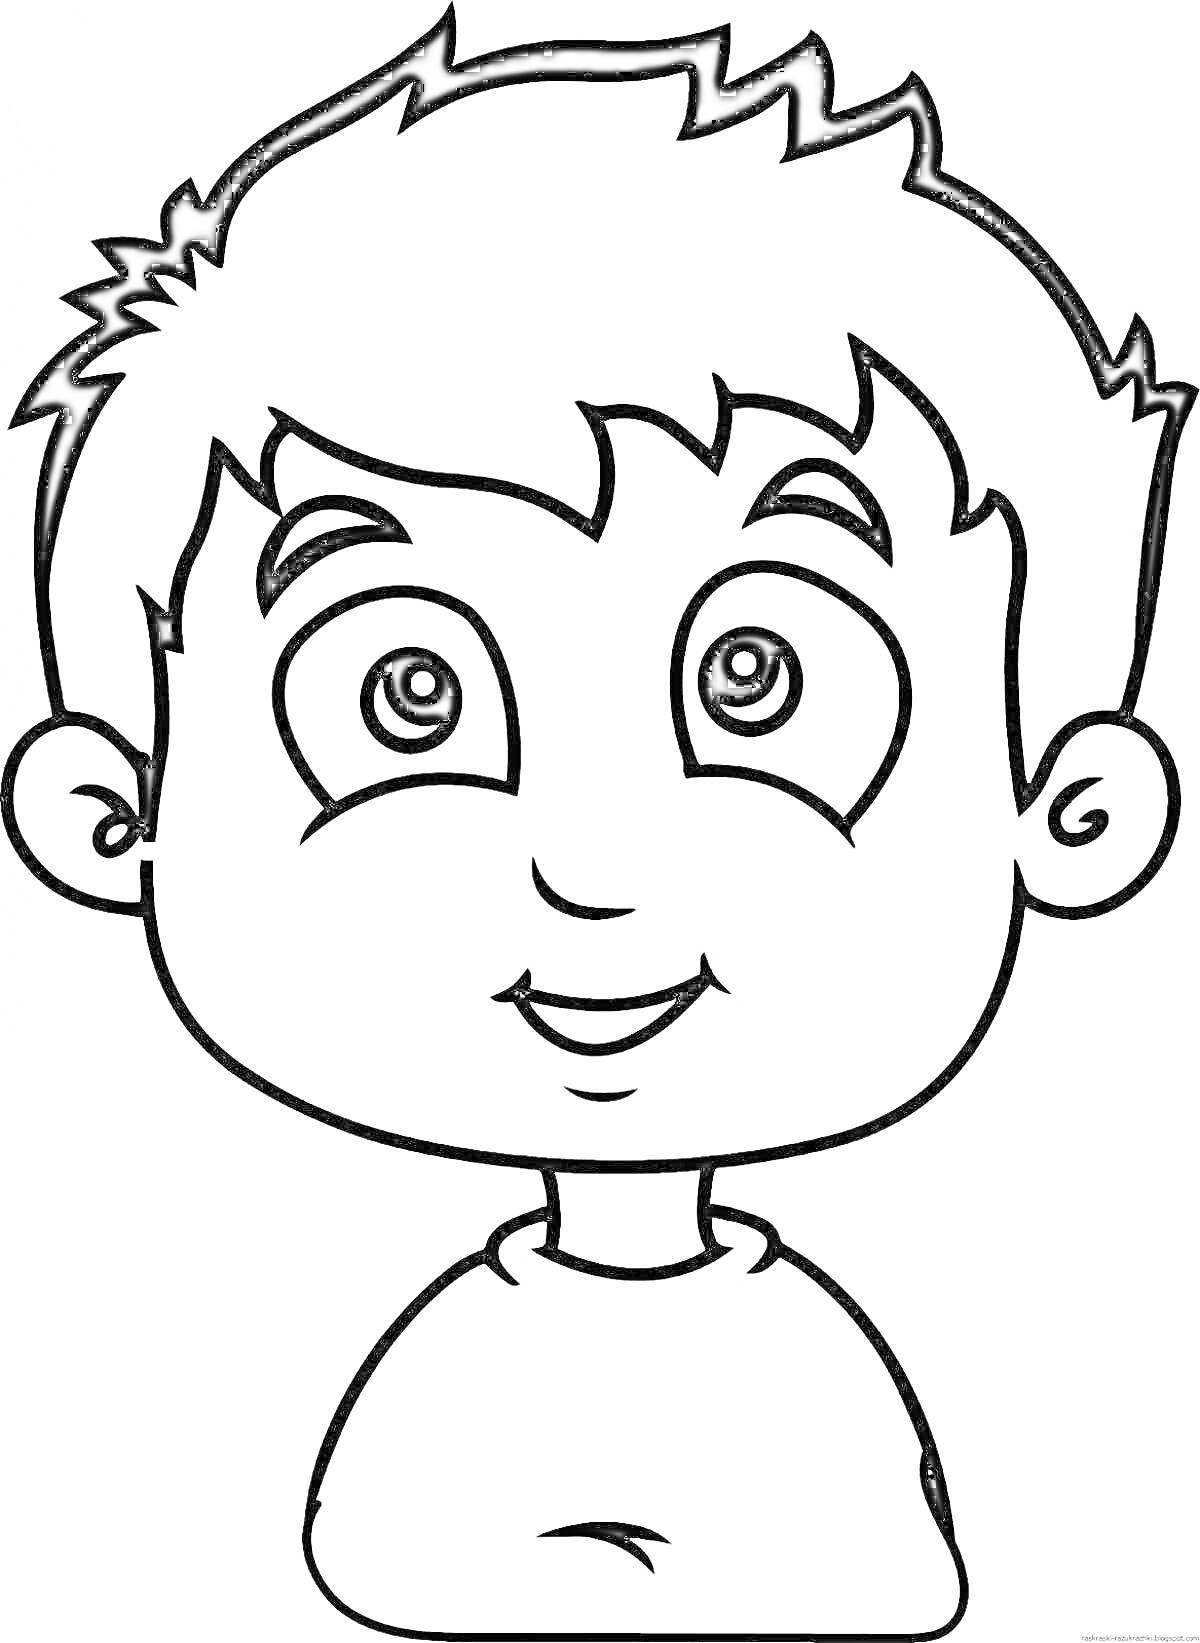 Раскраска Портрет мальчика с короткими волосами и большими глазами, с улыбкой на лице, одетого в футболку